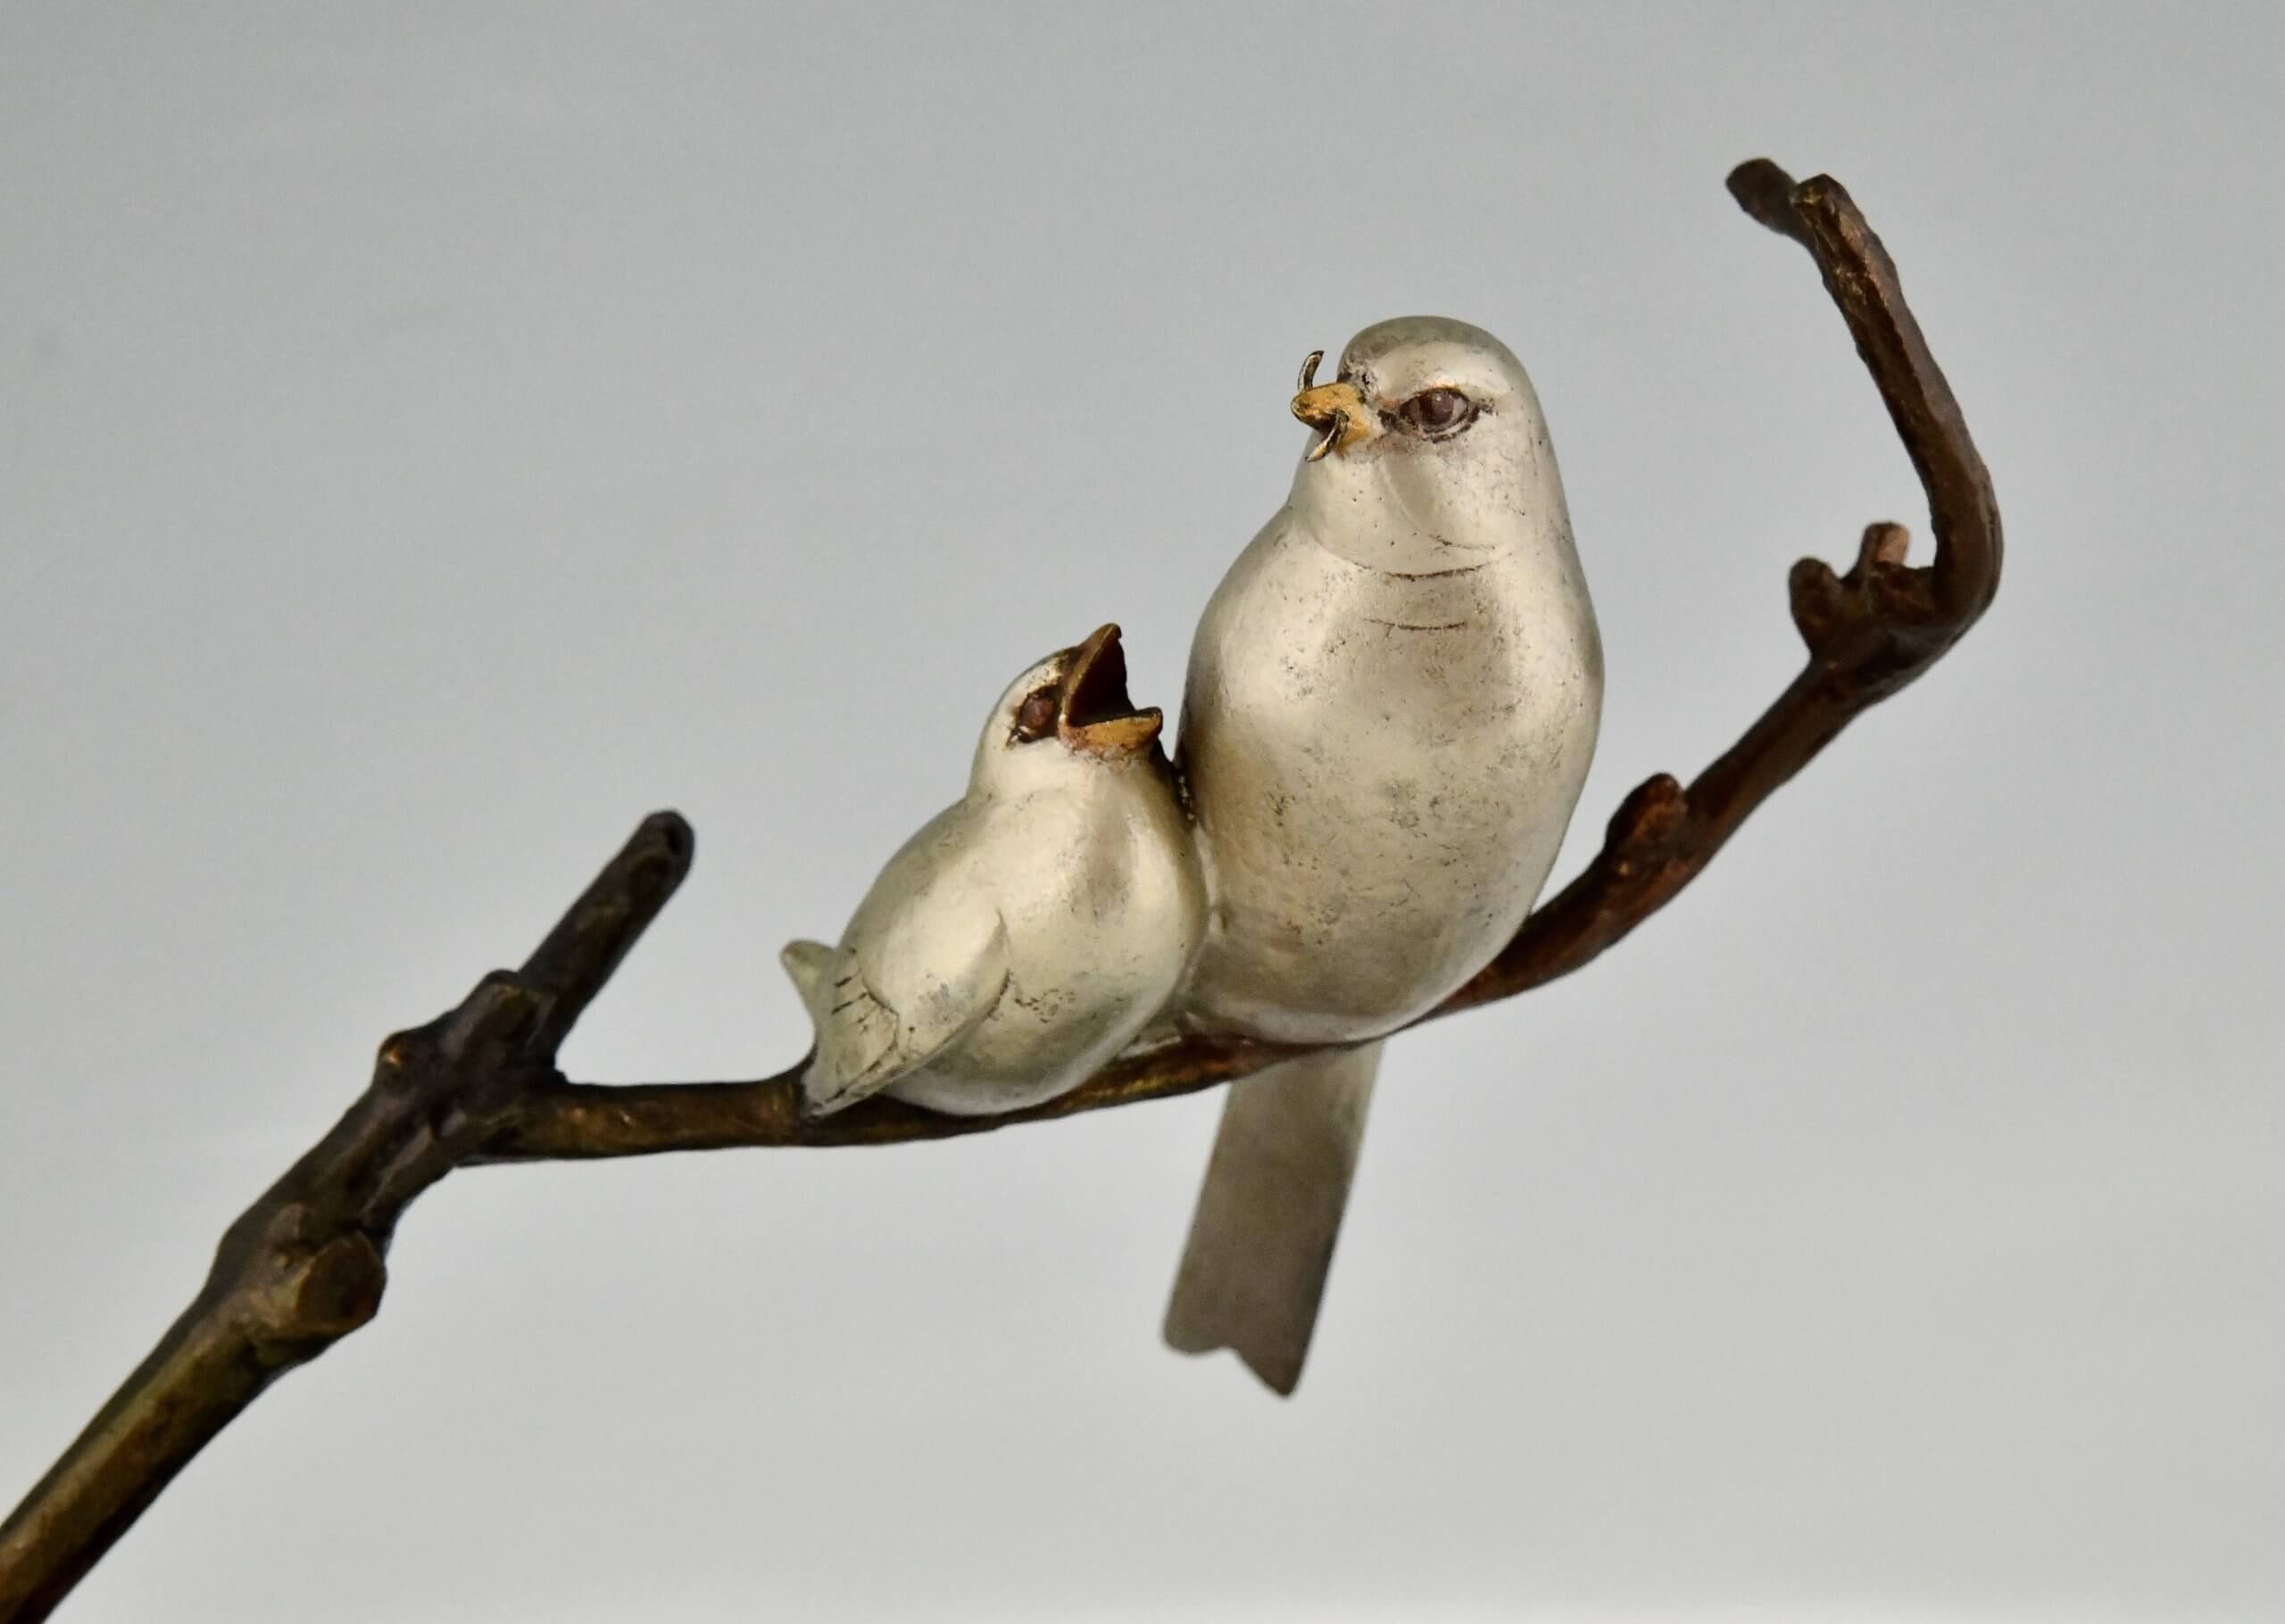 Art Deco sculpture birds on a branch.